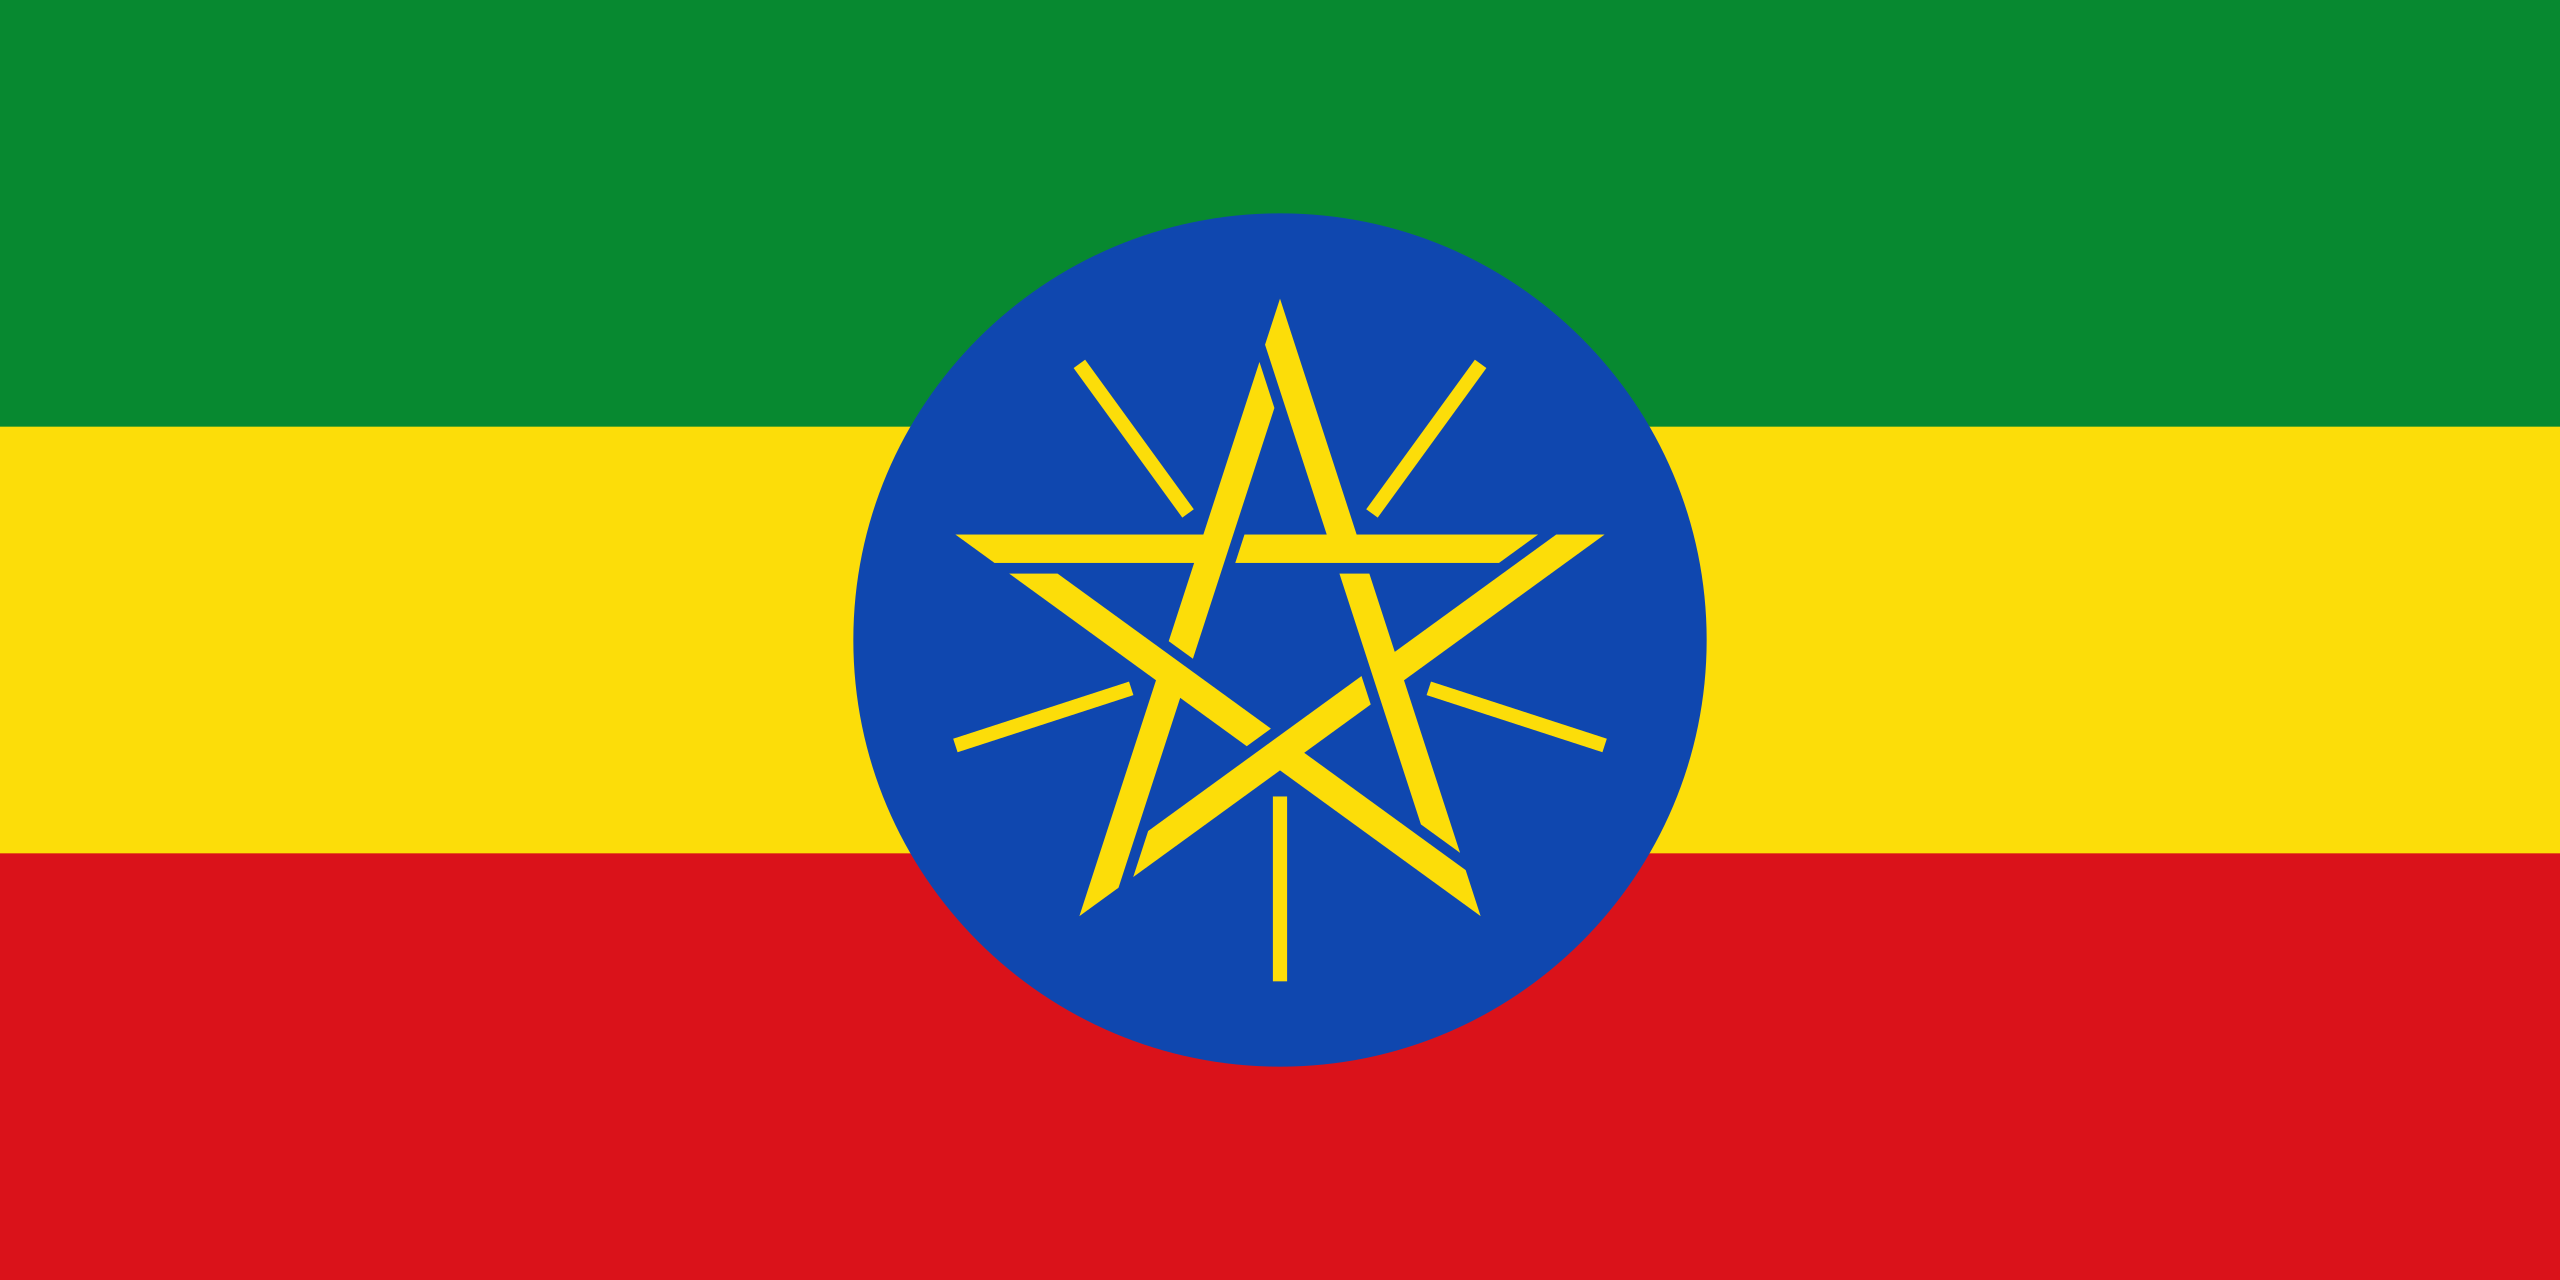 Proiect de transmisie 500KV în Etiopia